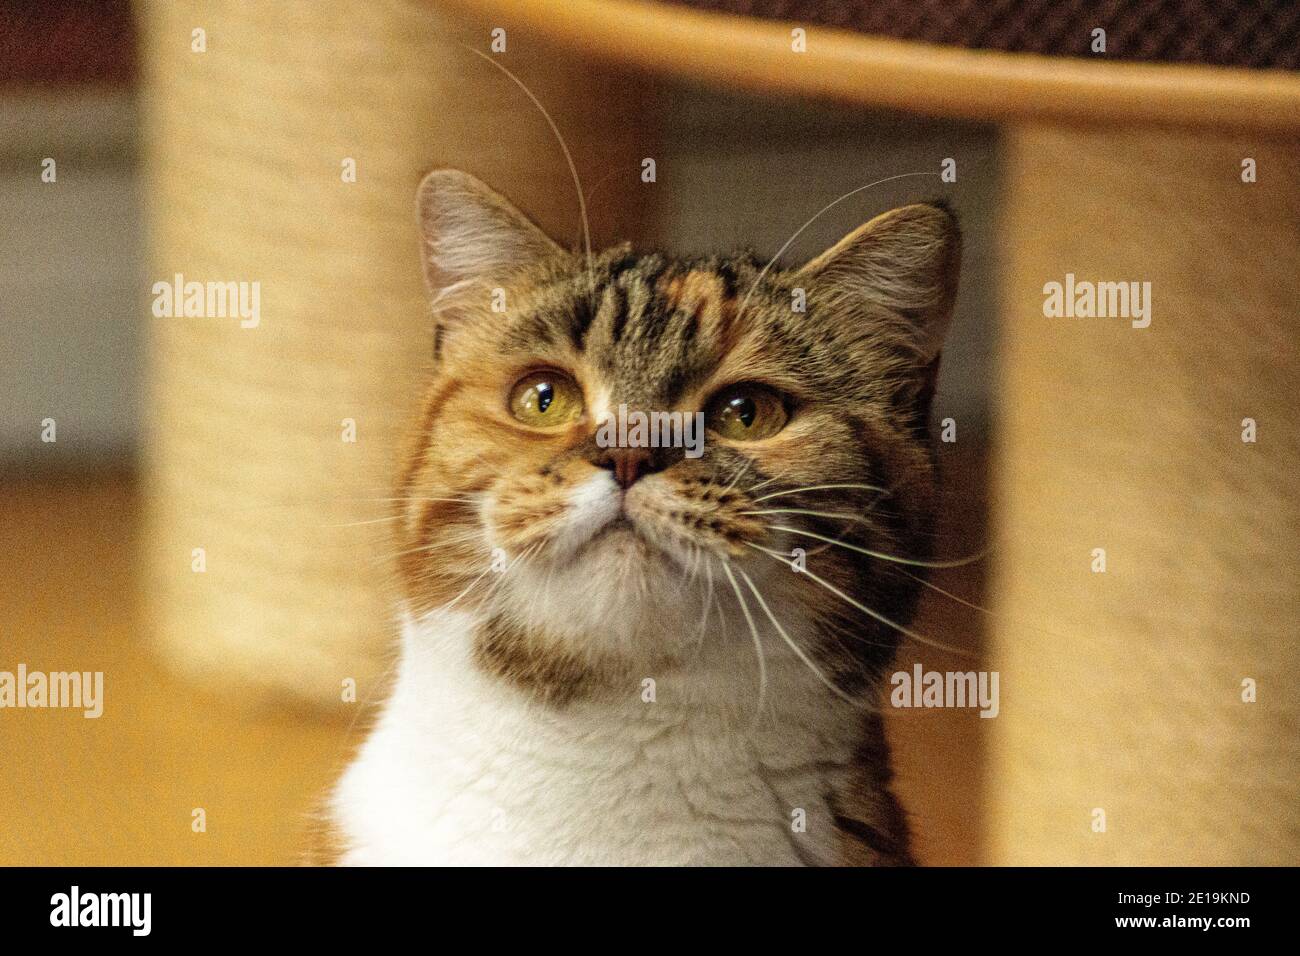 Hauskatzen von Freund cattery, Scottish Fold sind sehr unabhängig, sehr nett und freundlich. Sie spielen gerne, sie sind sehr freundlich. Stockfoto